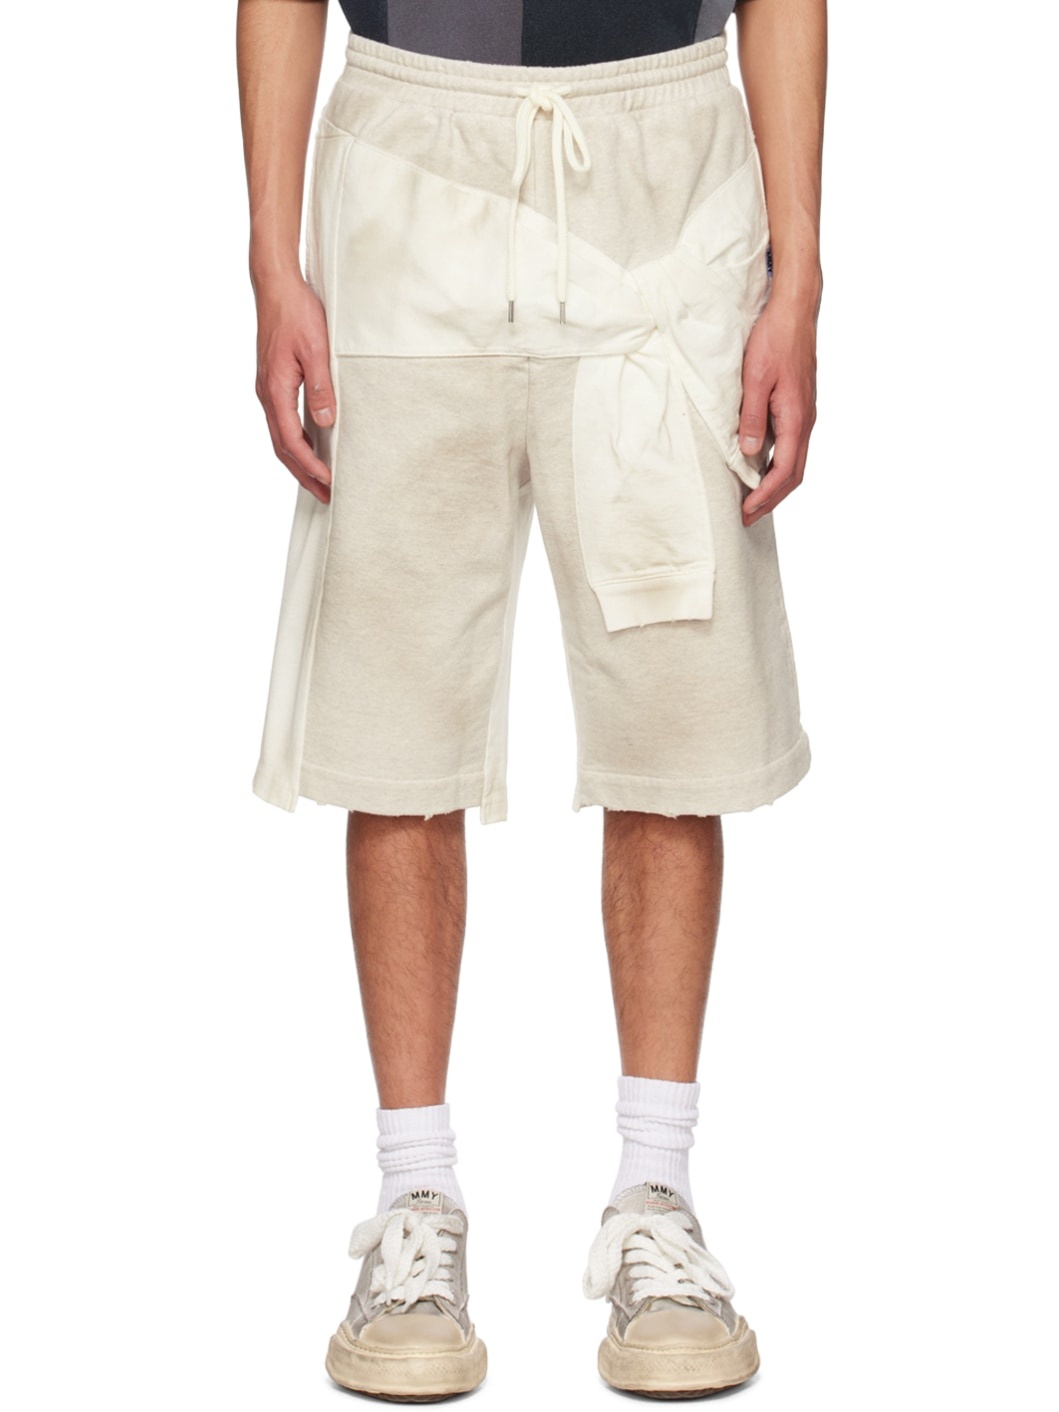 Off-White Paneled Shorts - 1